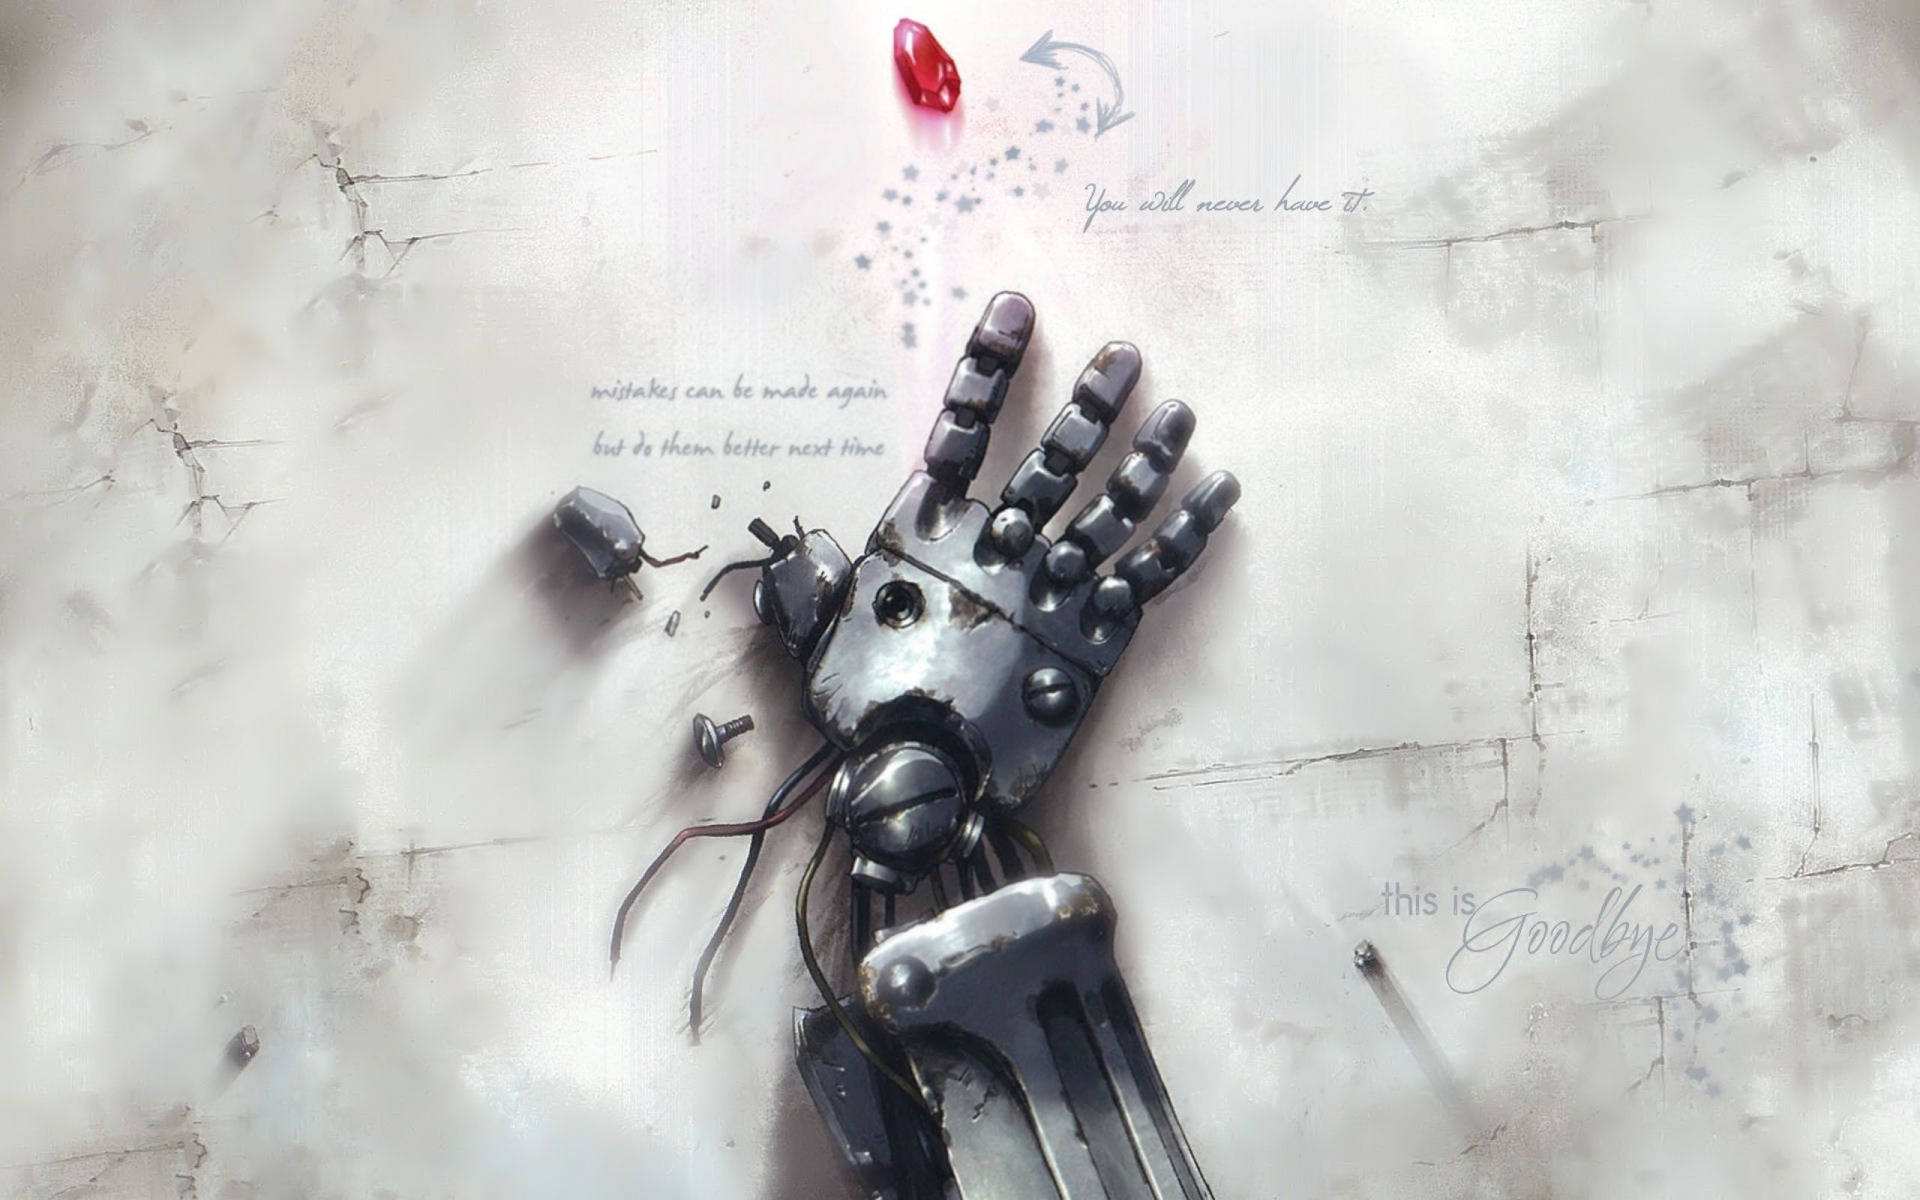 Fullmetal Alchemist Robot Hand Background